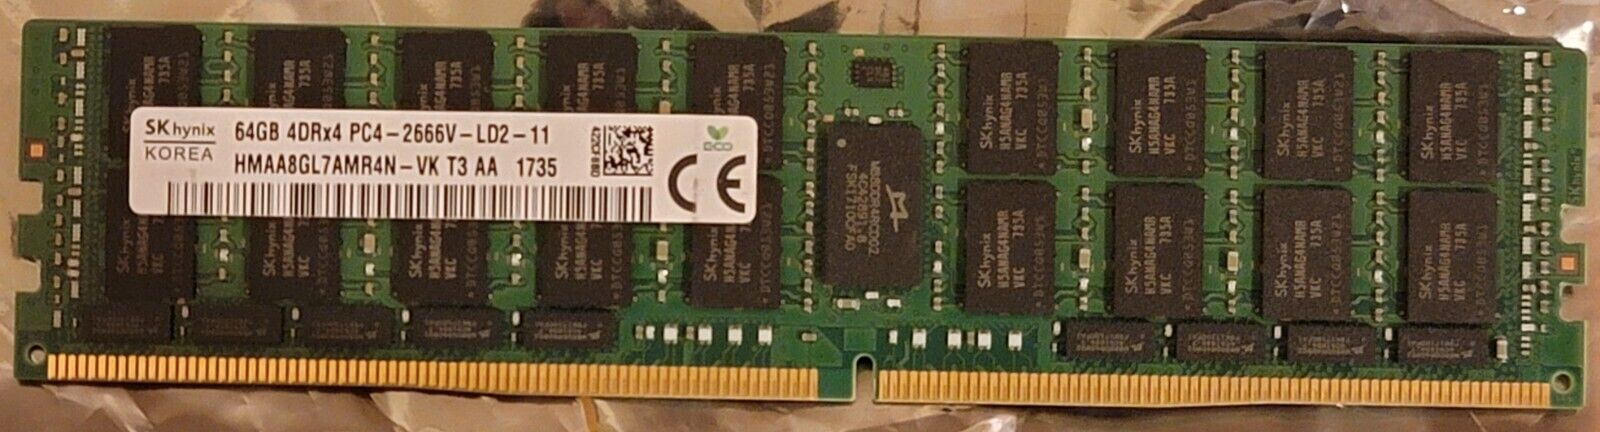 SK hynix 64GB DDR4 SDRAM LRDIMM RAM Memory Module HMAA8GL7AMR4N-VK